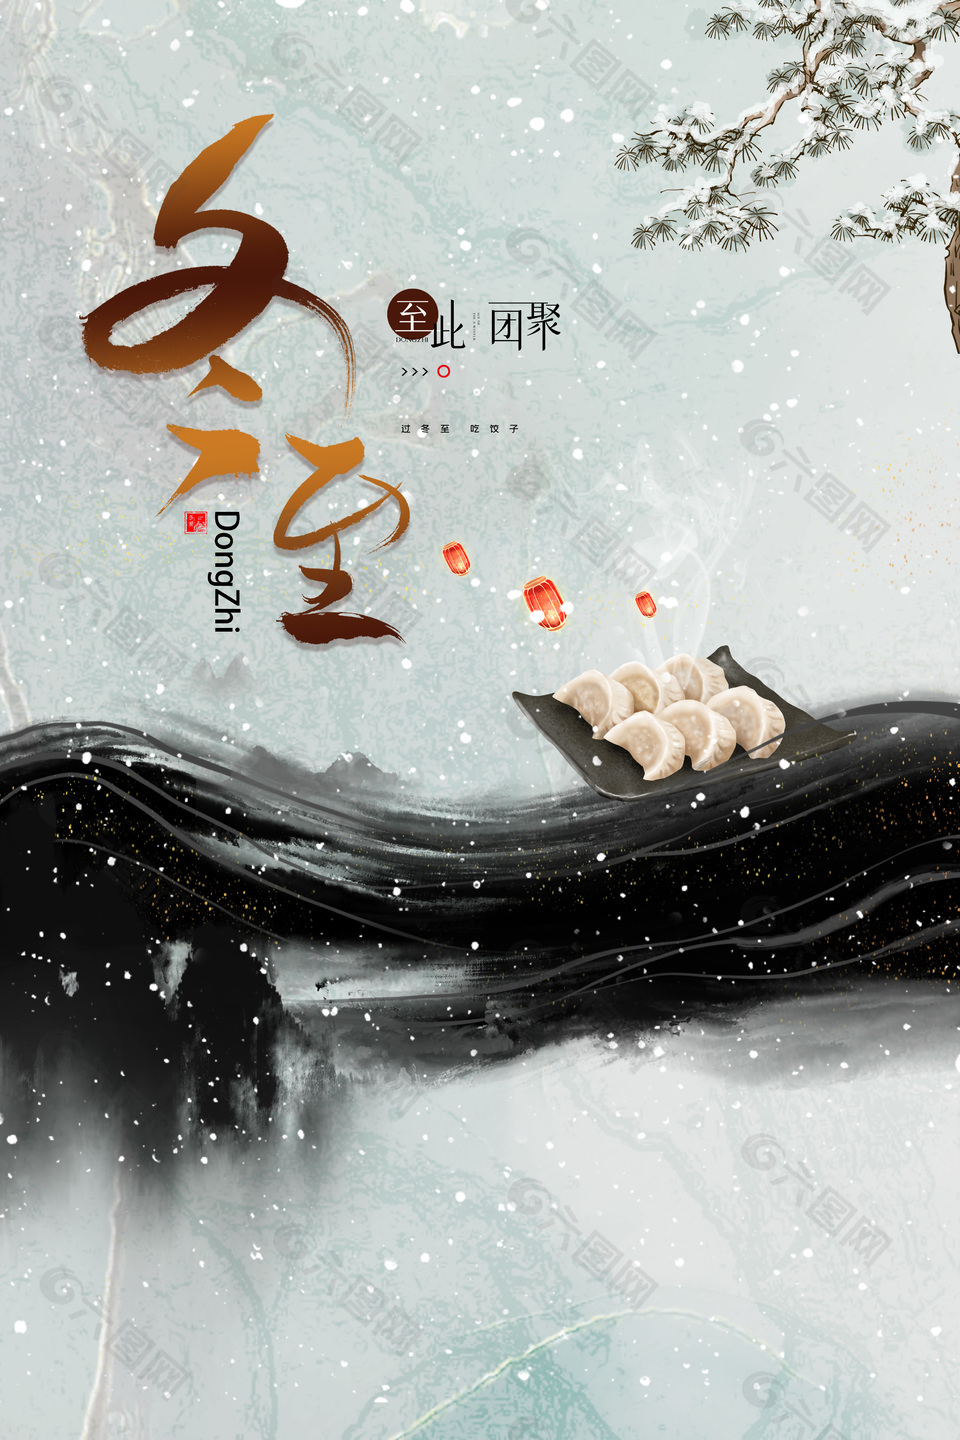 过冬至吃饺子中国风简约节气海报